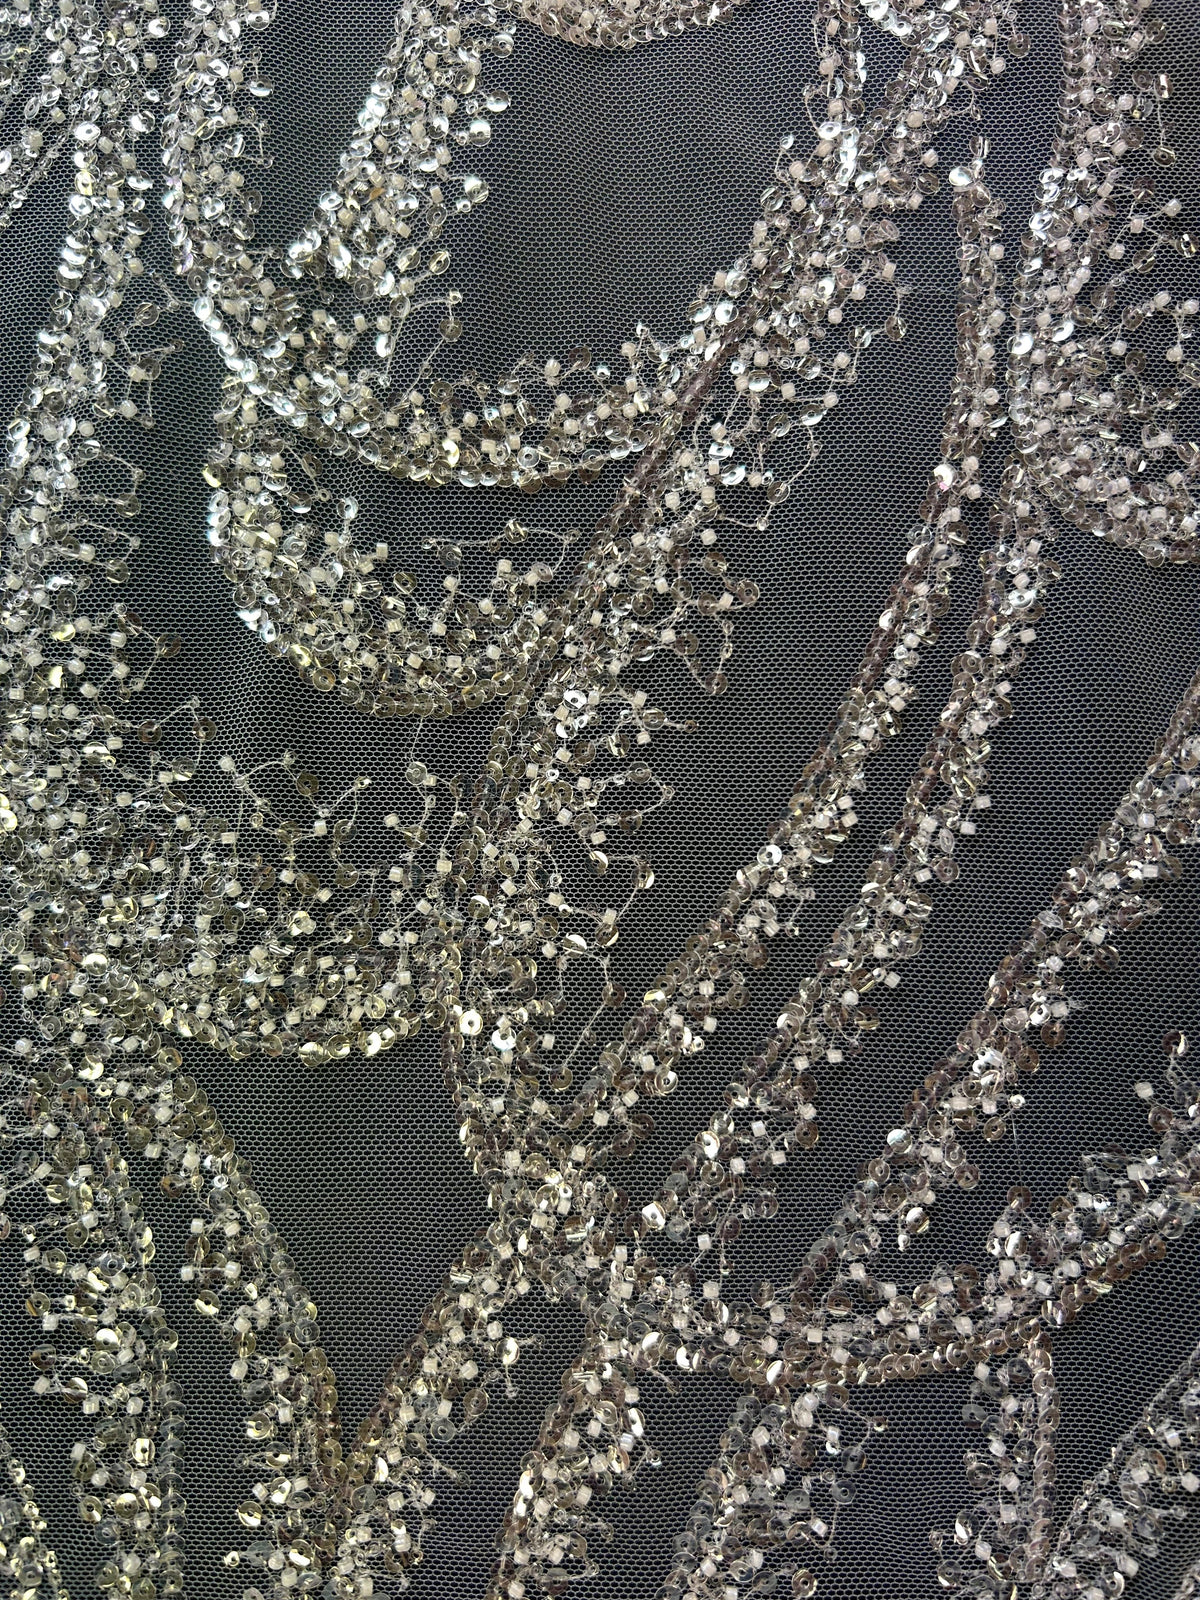 Elfenbeinfarbene Perlenspitze – Carmeena